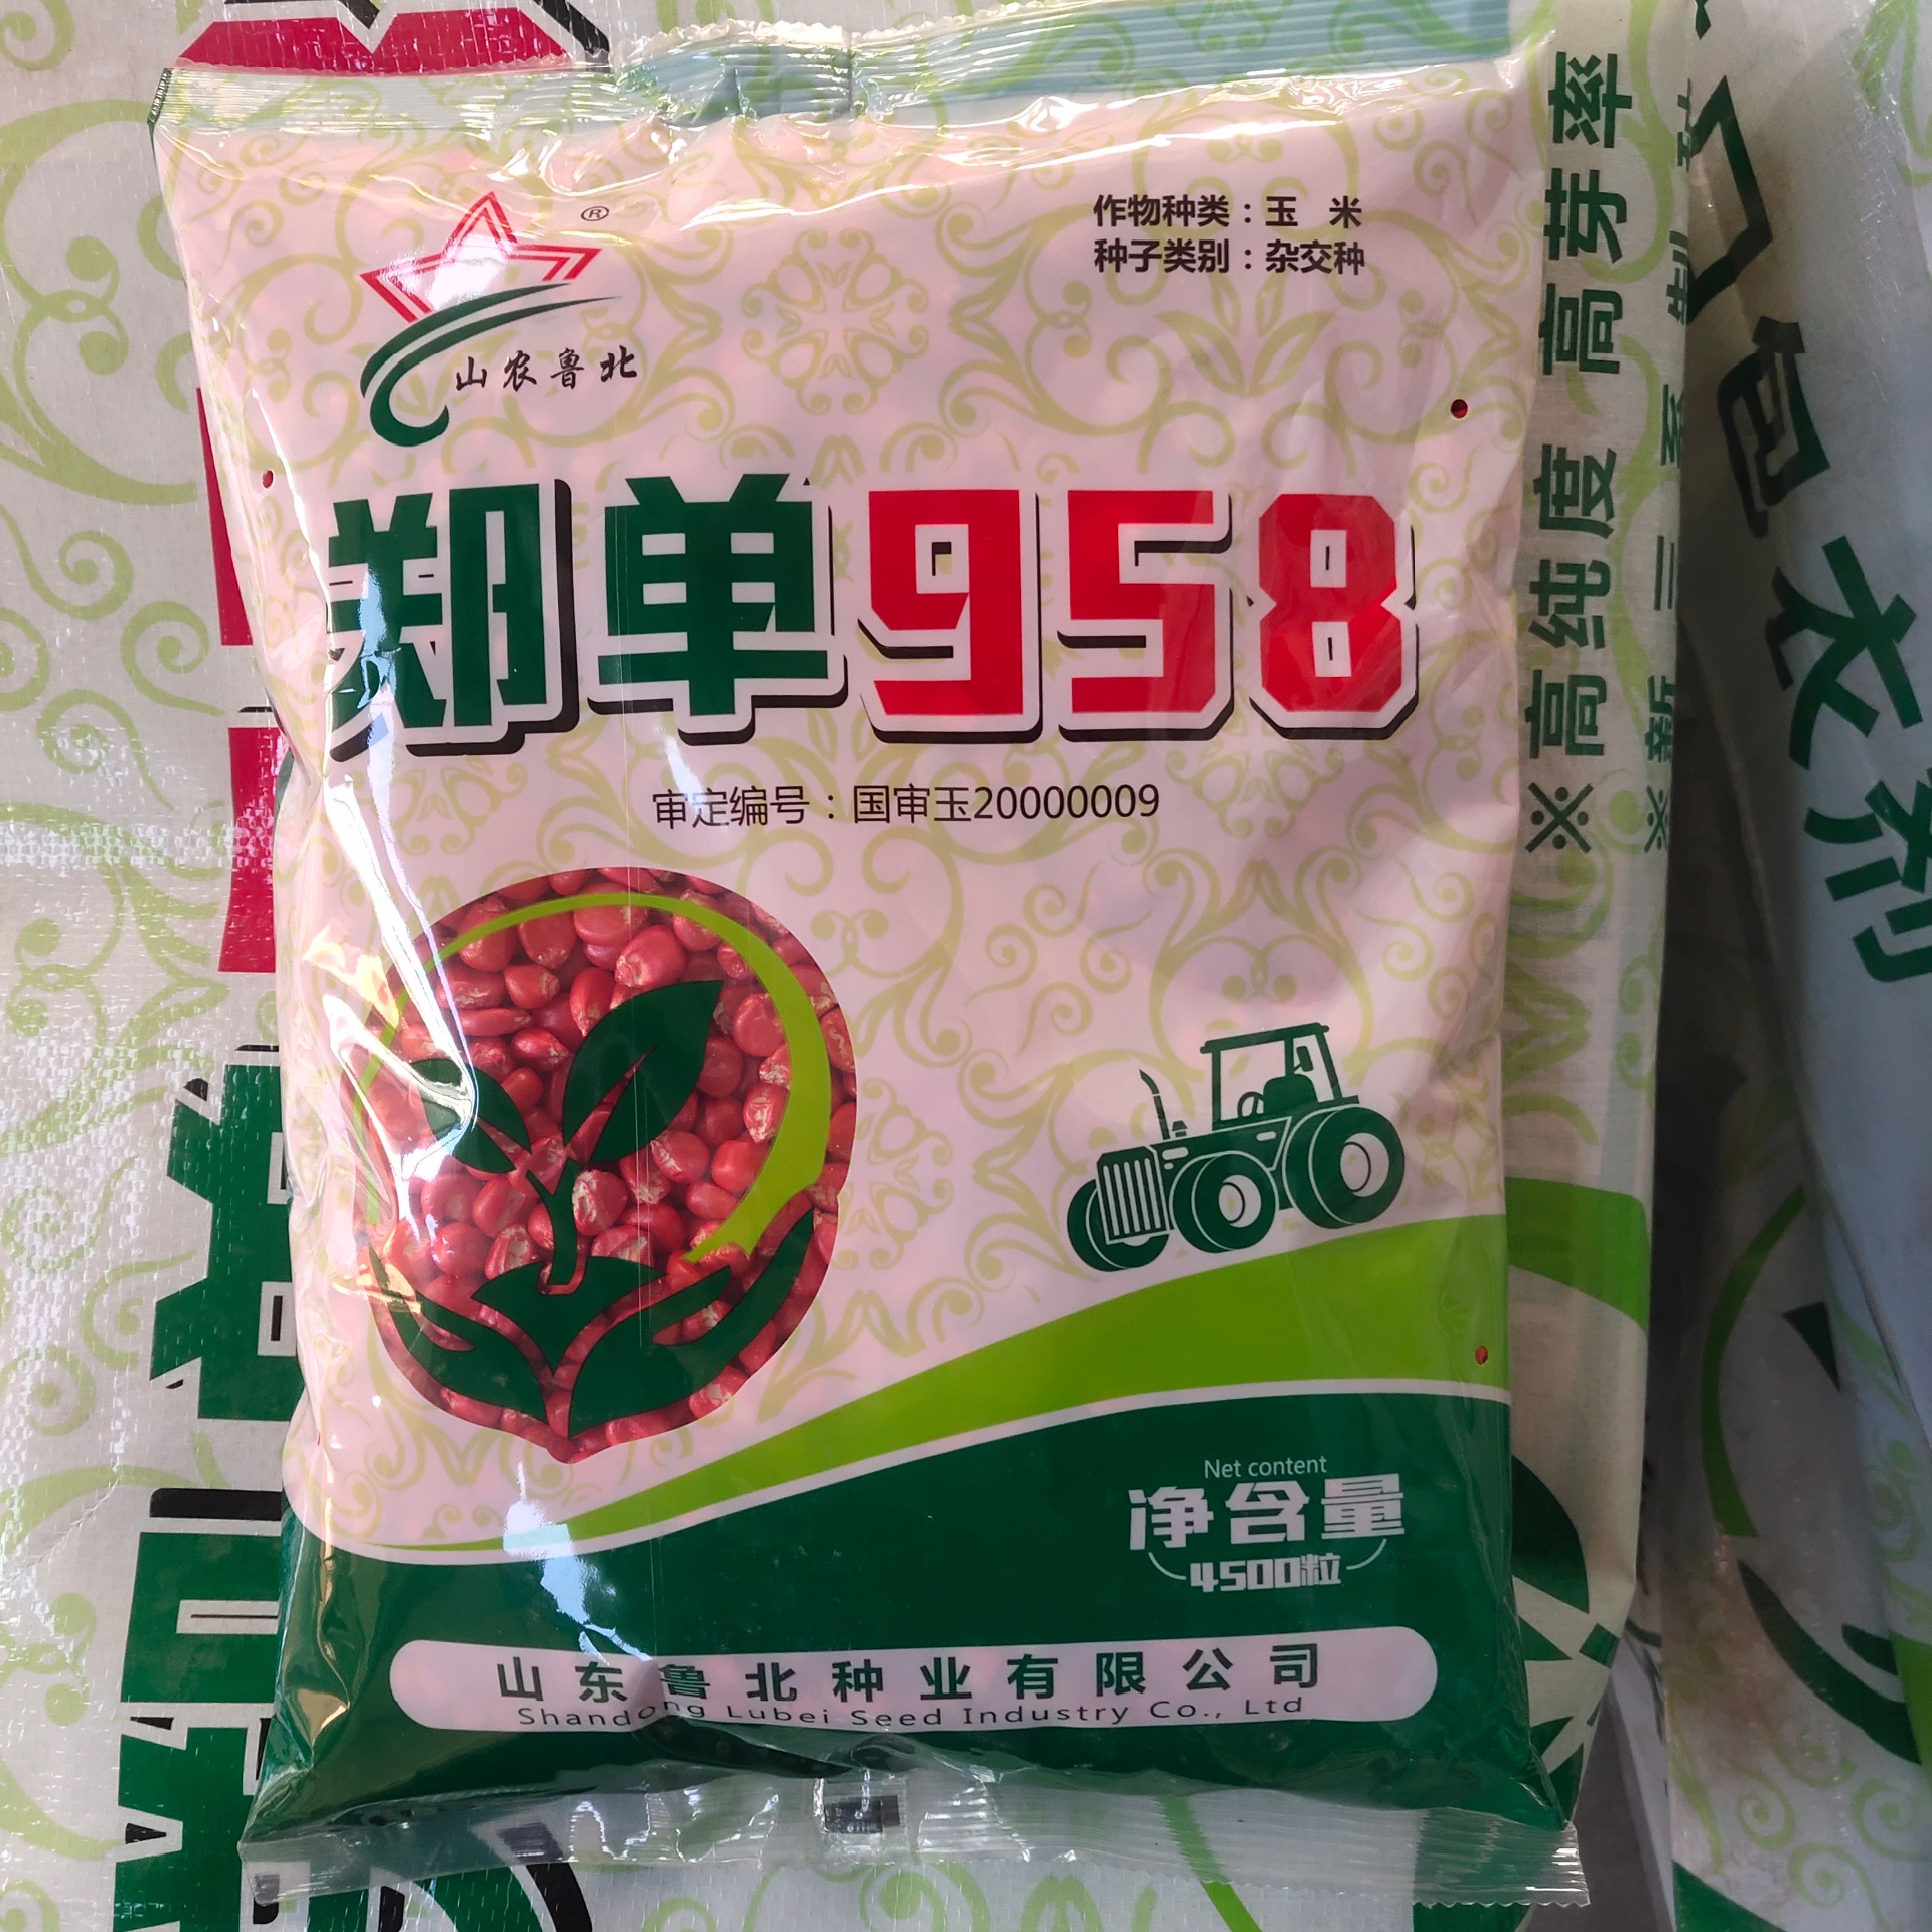 新三系郑单958玉米种子 鲁北种业直销 国审品种 高产稳产